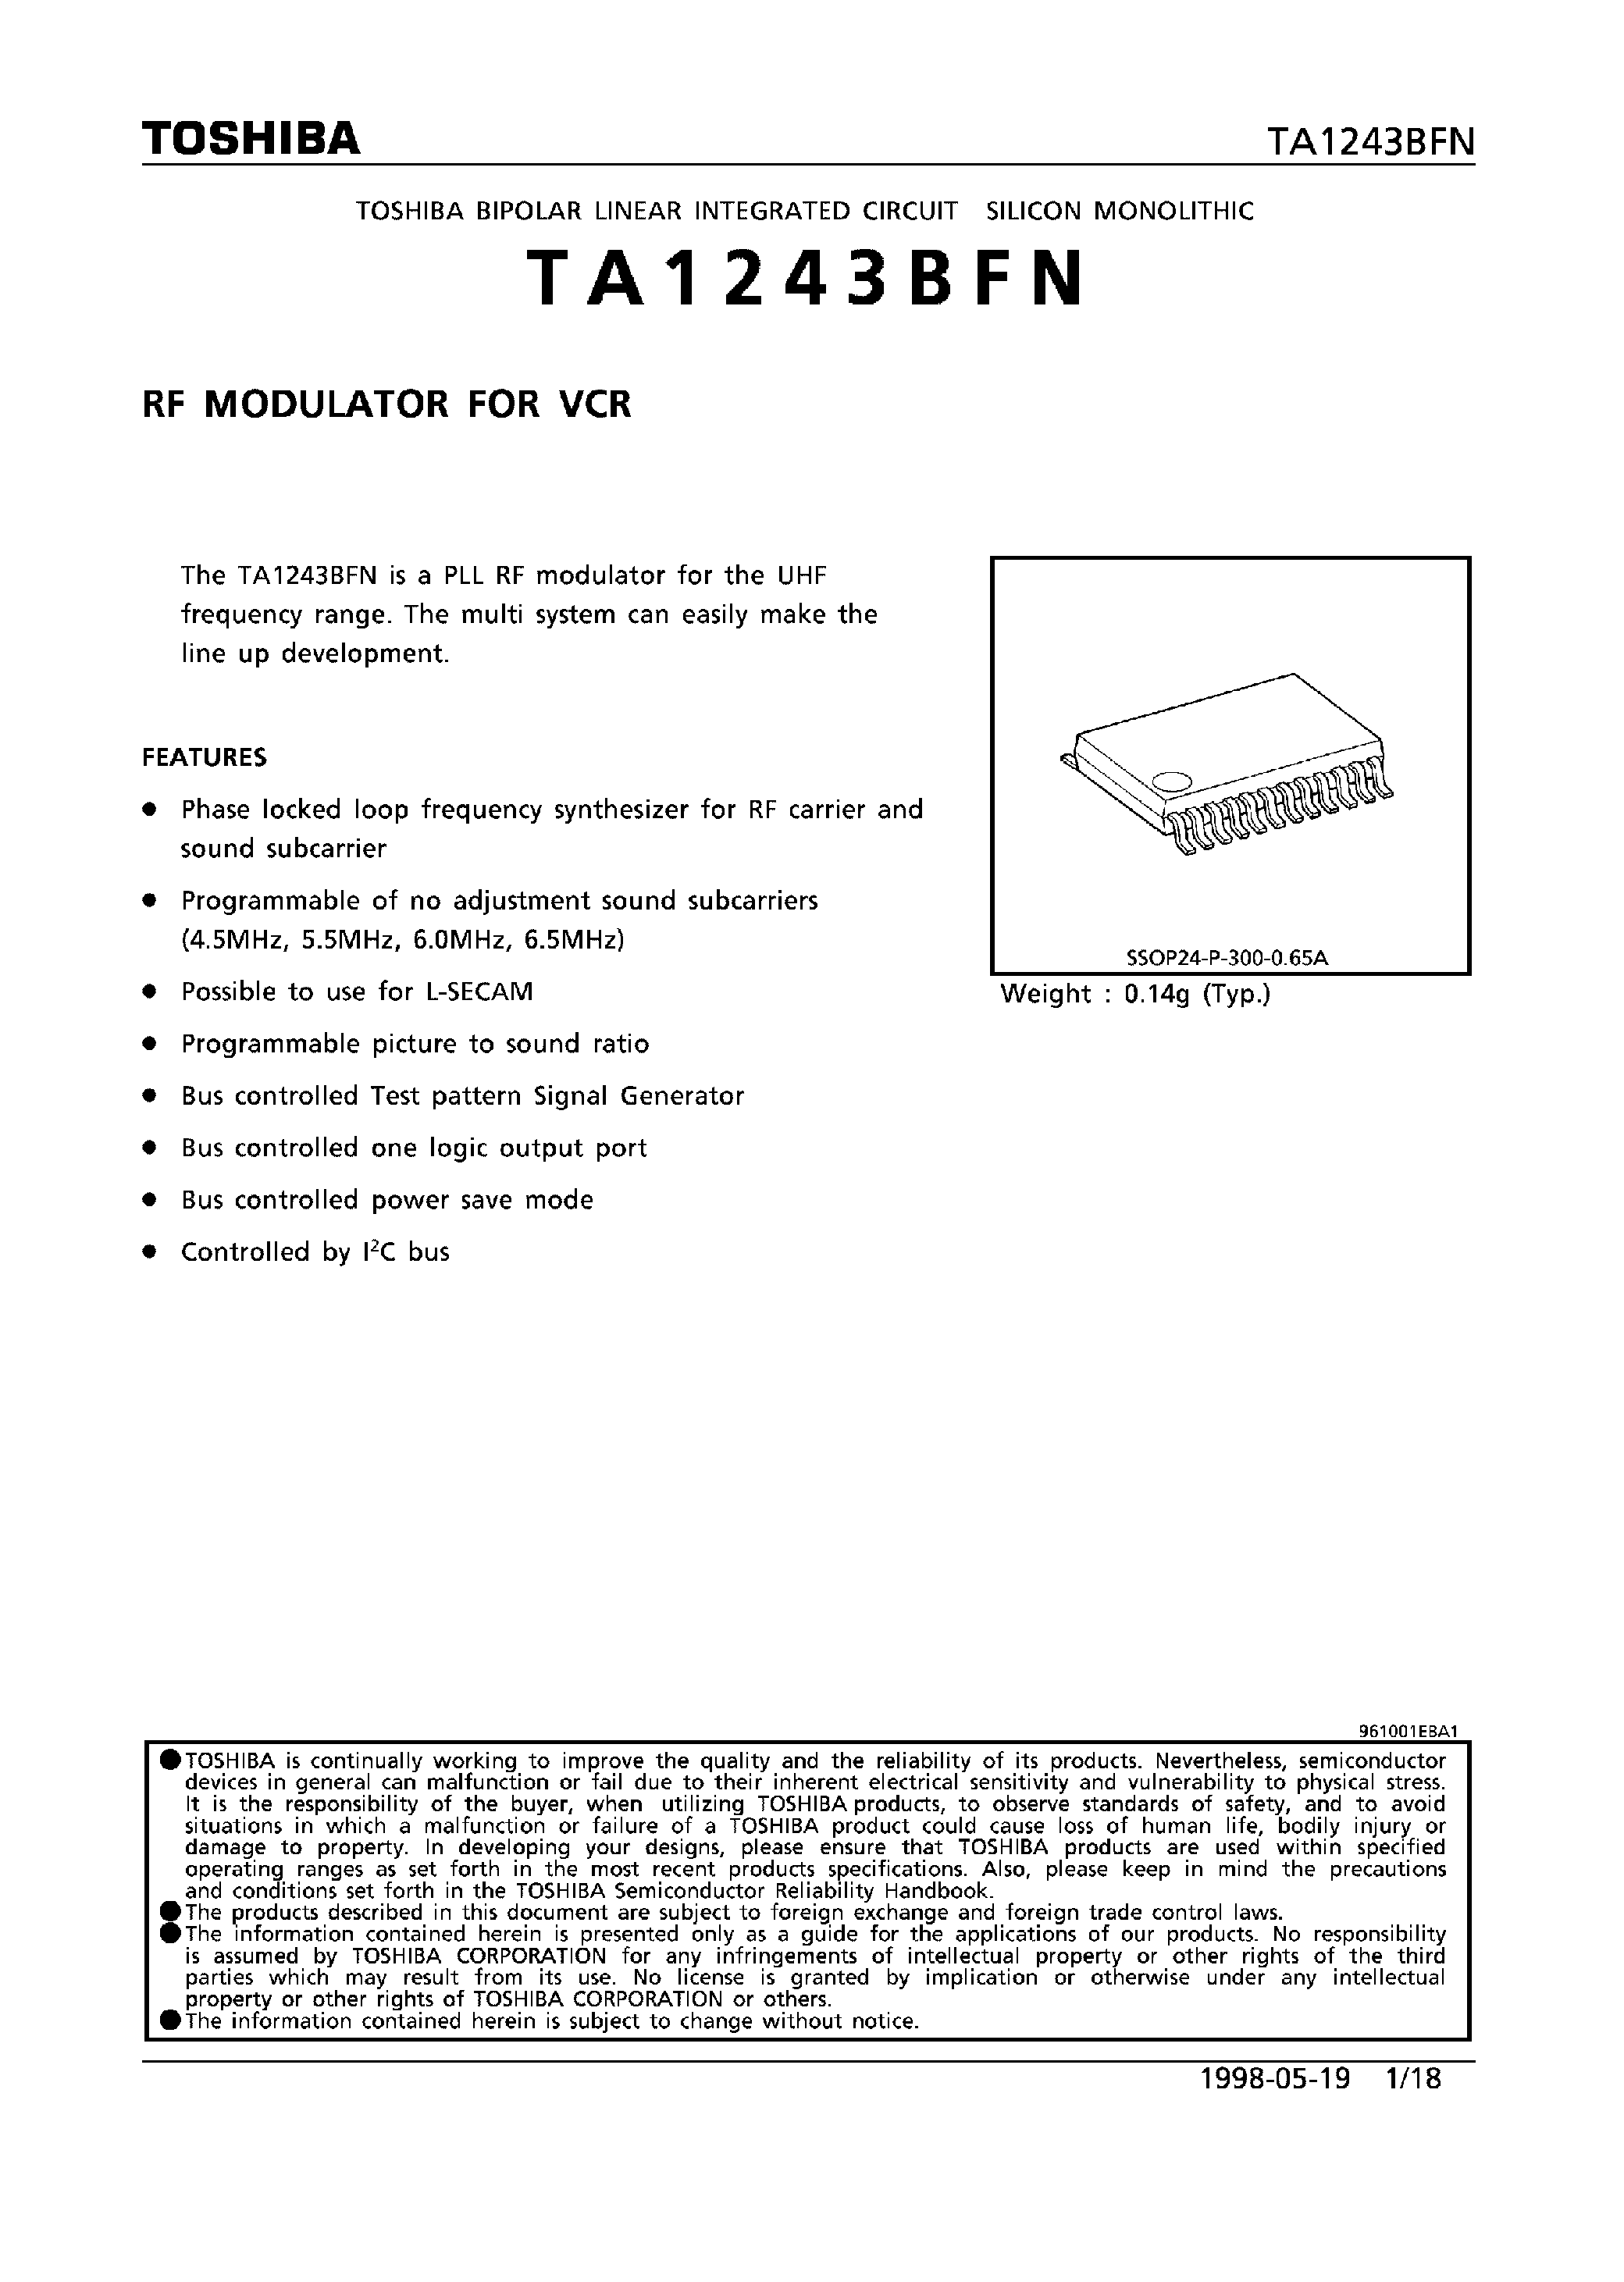 Даташит TA1243BFN - RF MODULATOR FOR VCR страница 1